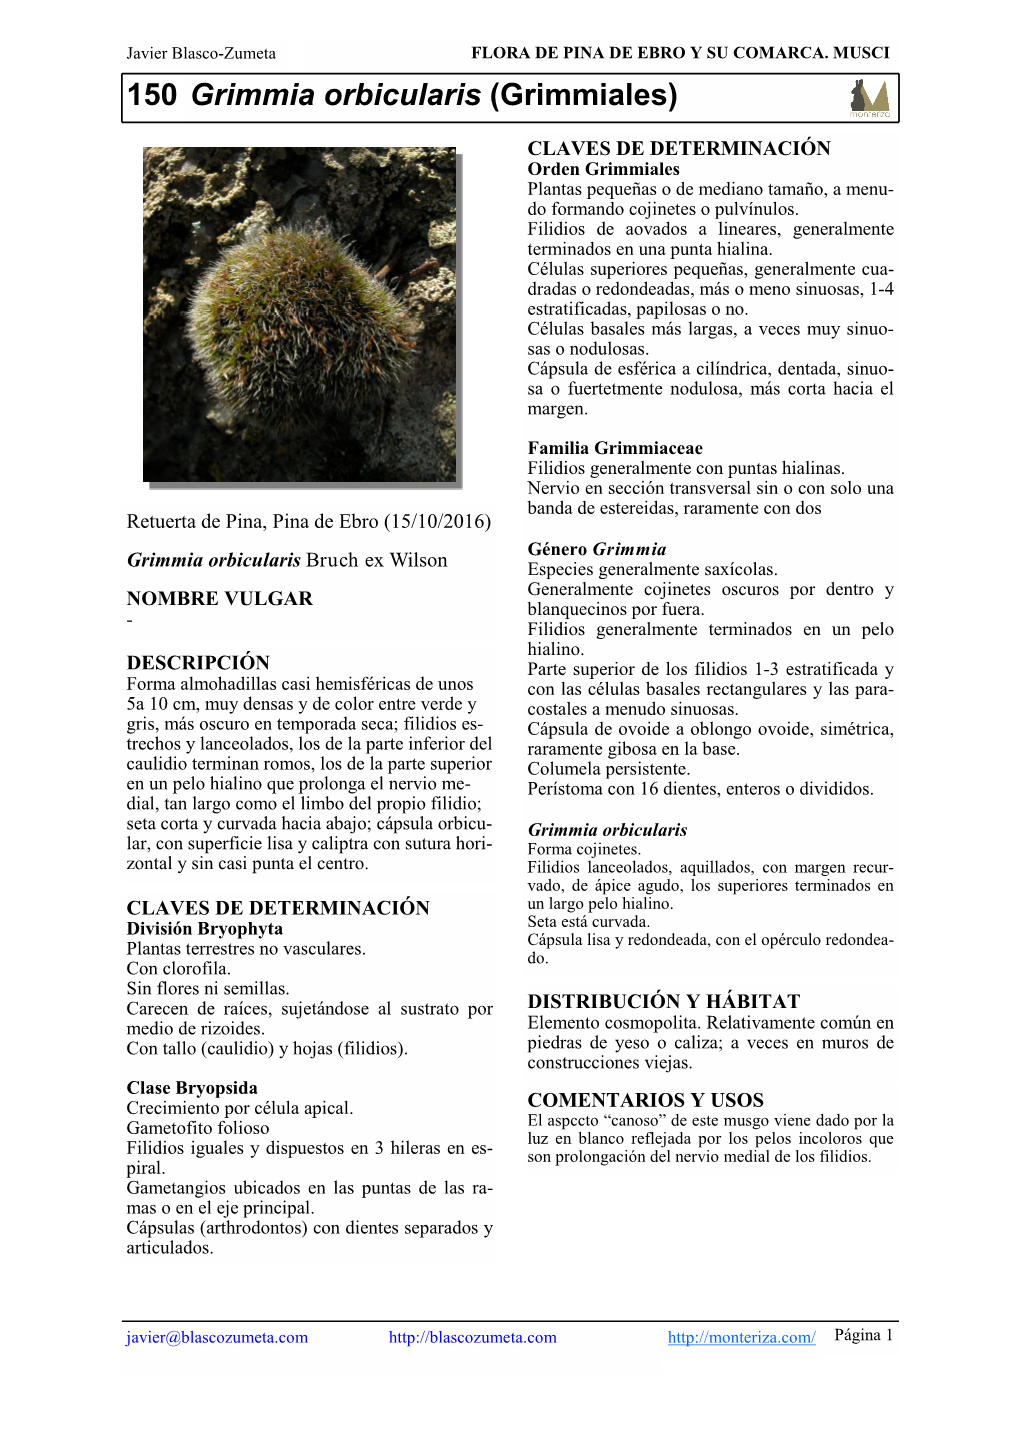 150 Grimmia Orbicularis (Grimmiales)